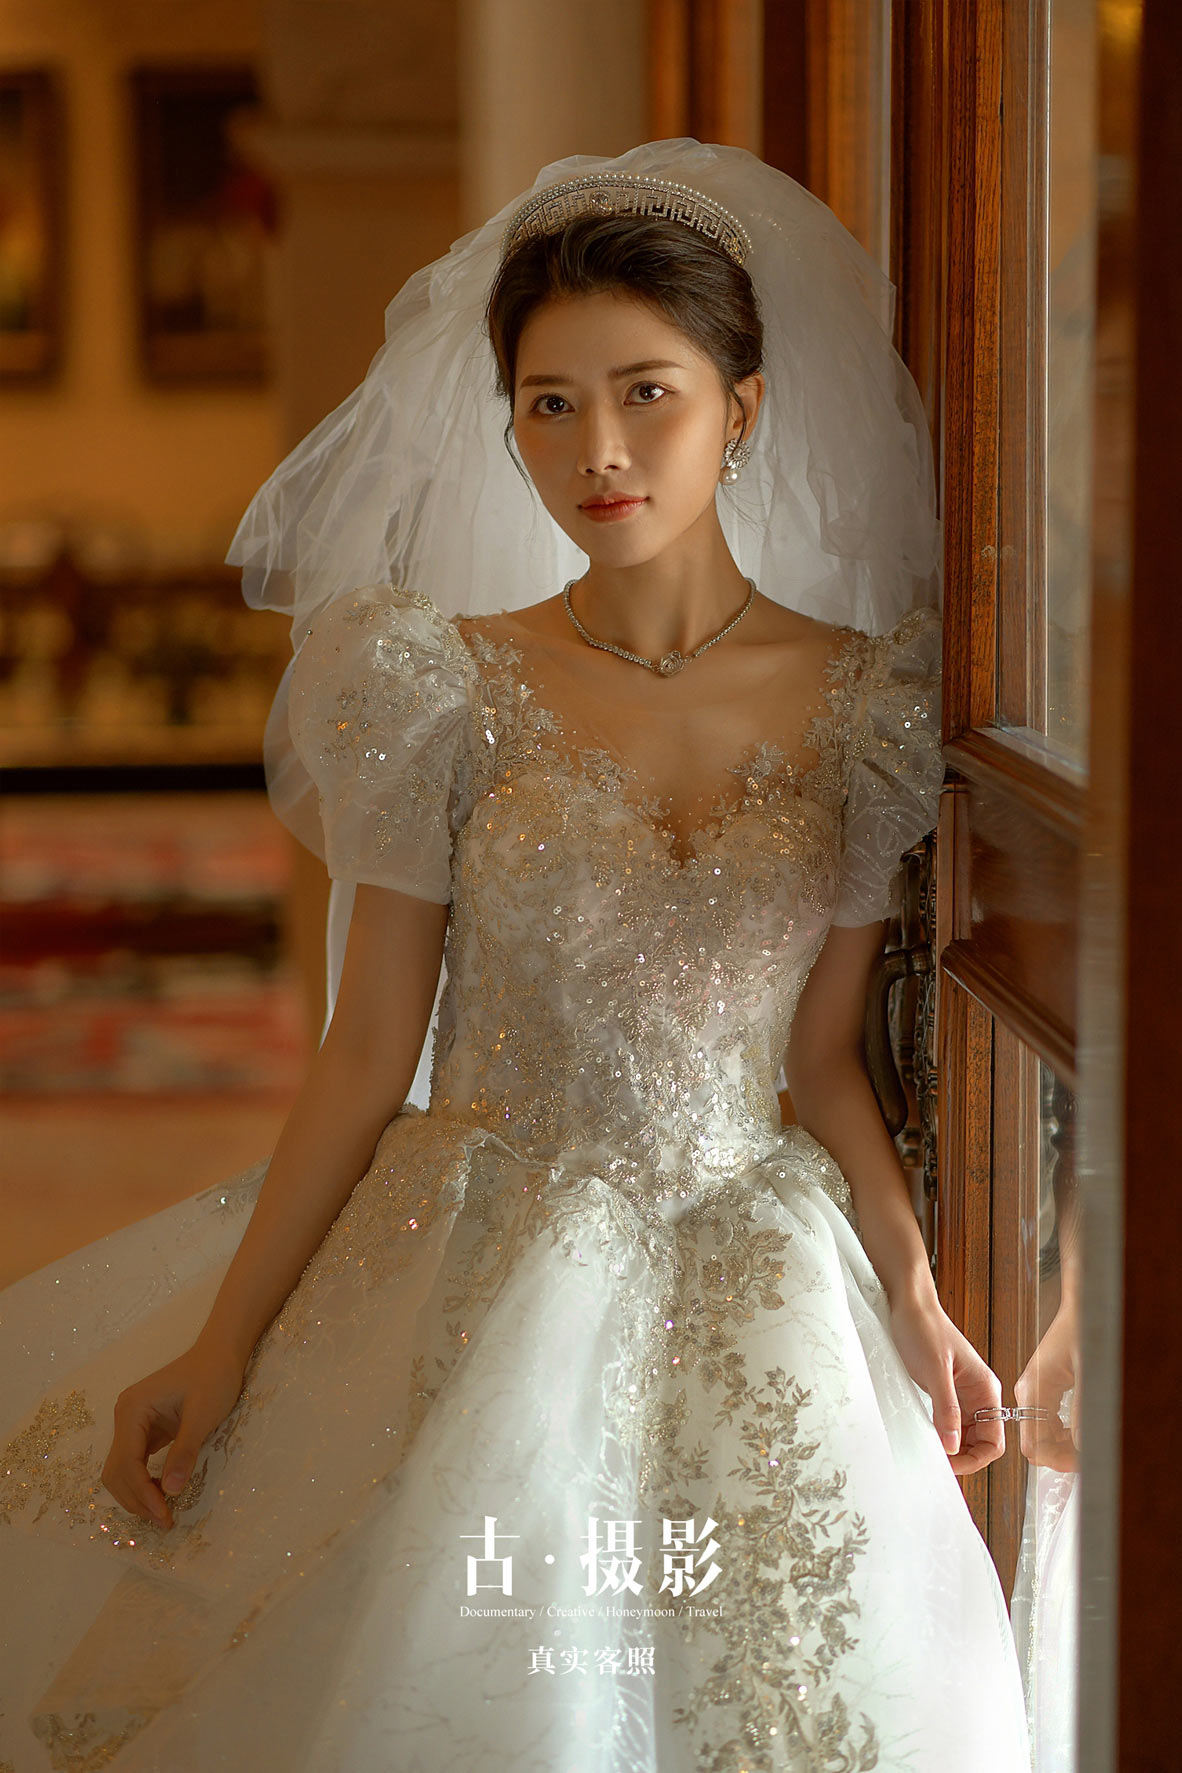 翟先生 王小姐 - 每日客照 - 广州婚纱摄影-广州古摄影官网